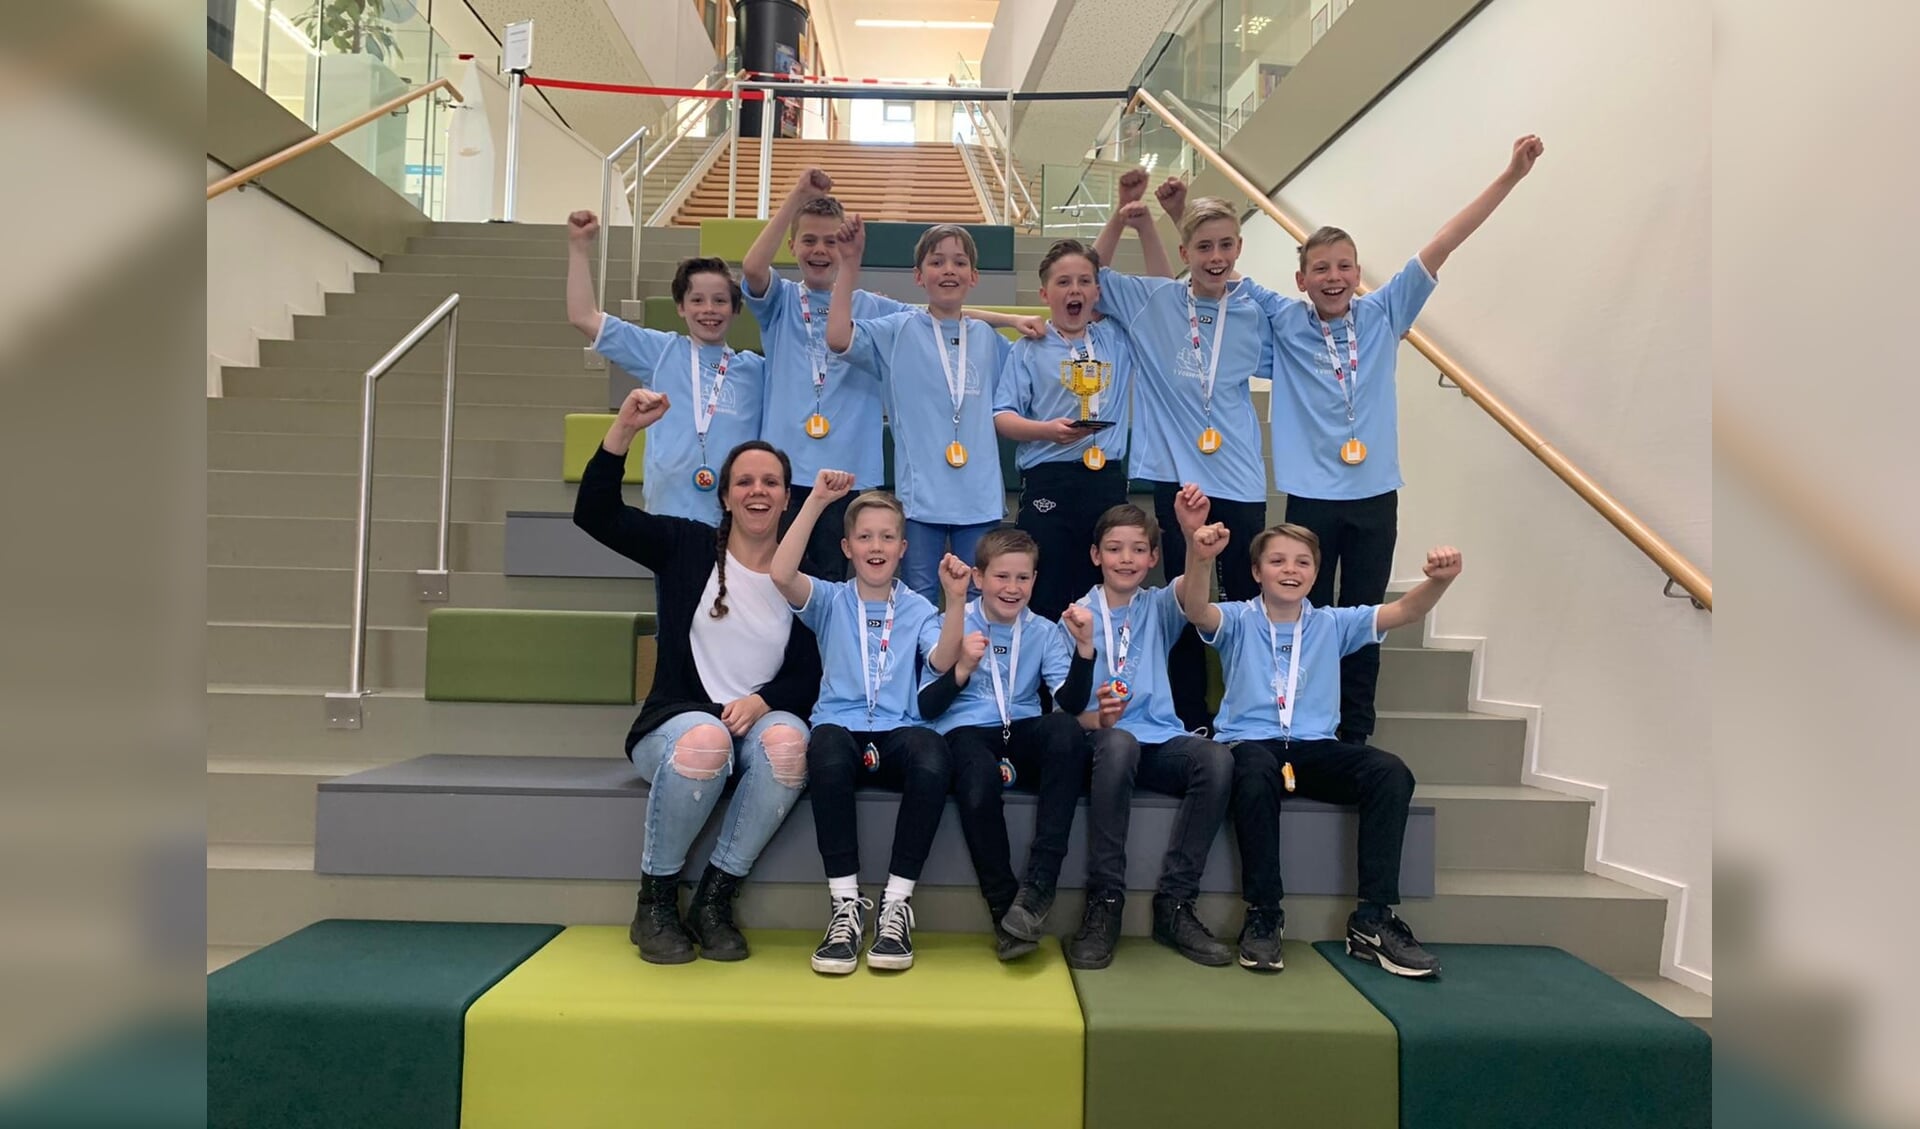 De winnende groep 8 van basisschool 't Vossenhol.